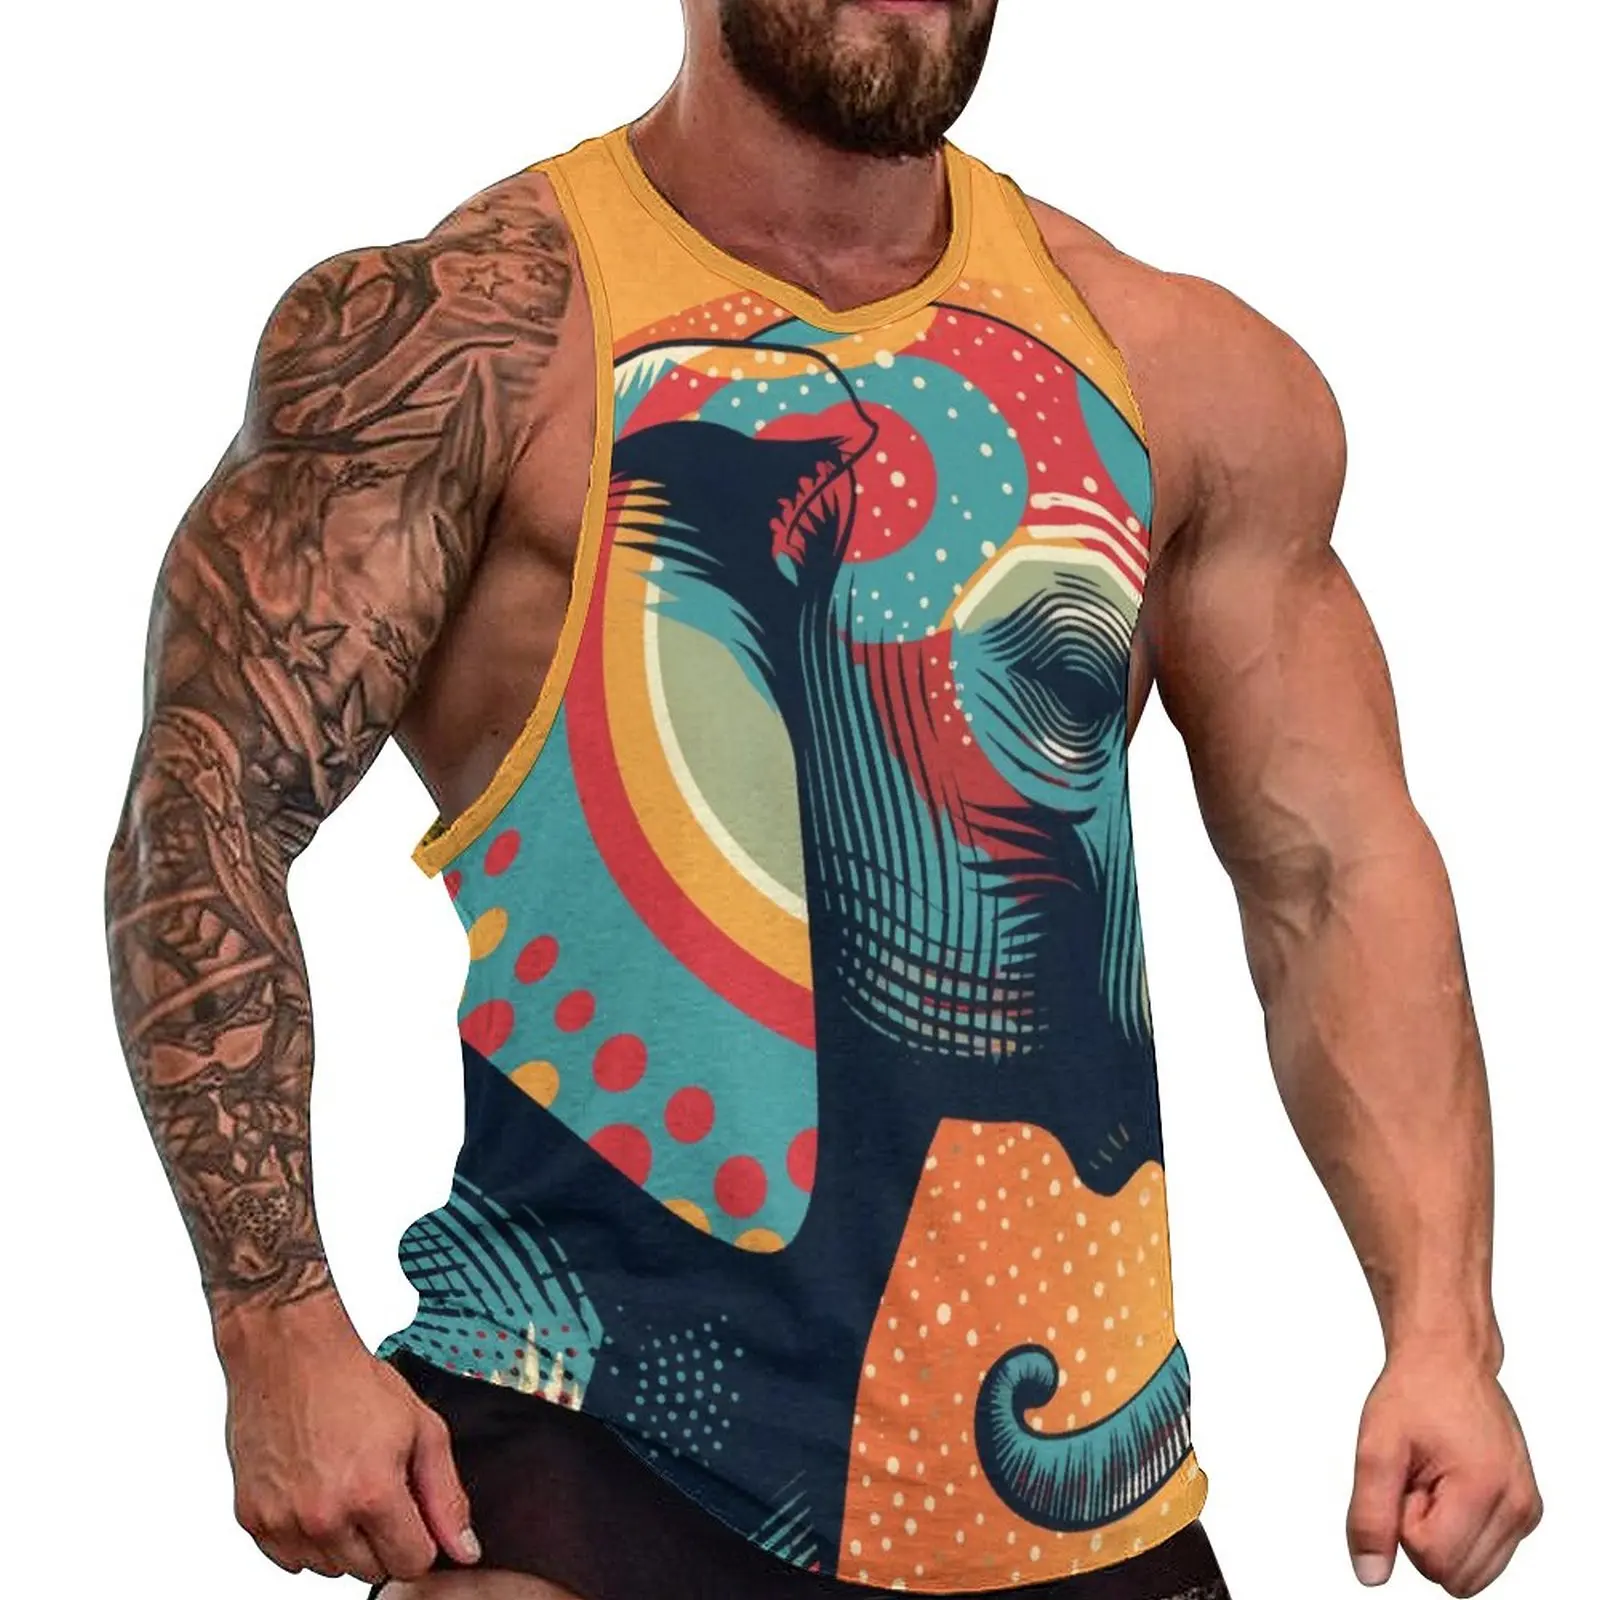 

Майка мужская с принтом слона, разноцветная спортивная одежда в стиле ретро, топ без рукавов с графическим принтом, большие размеры 4XL 5XL, на лето